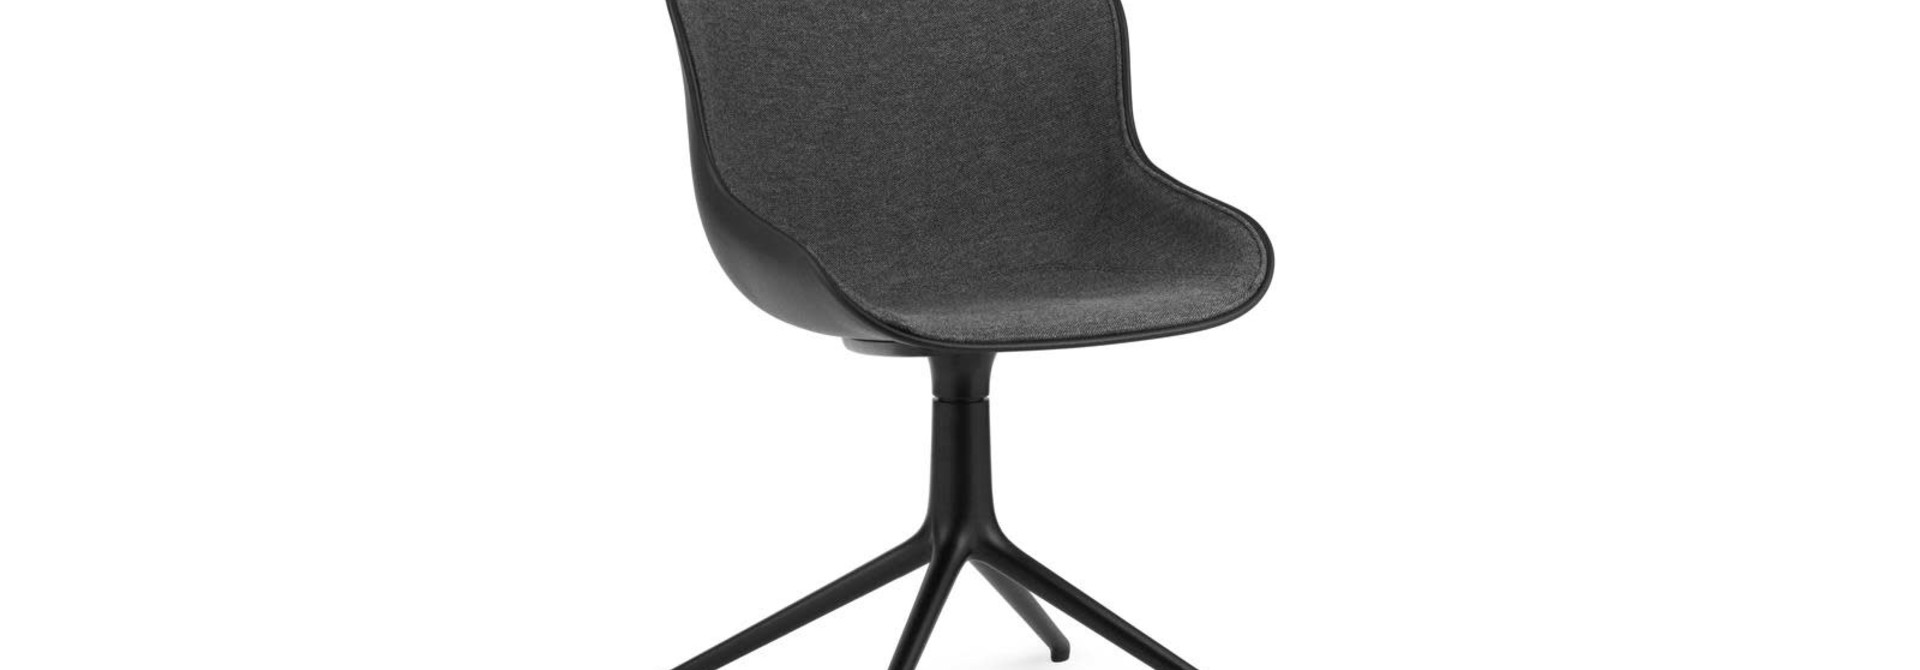 Hyg chair swivel - Full upholstery